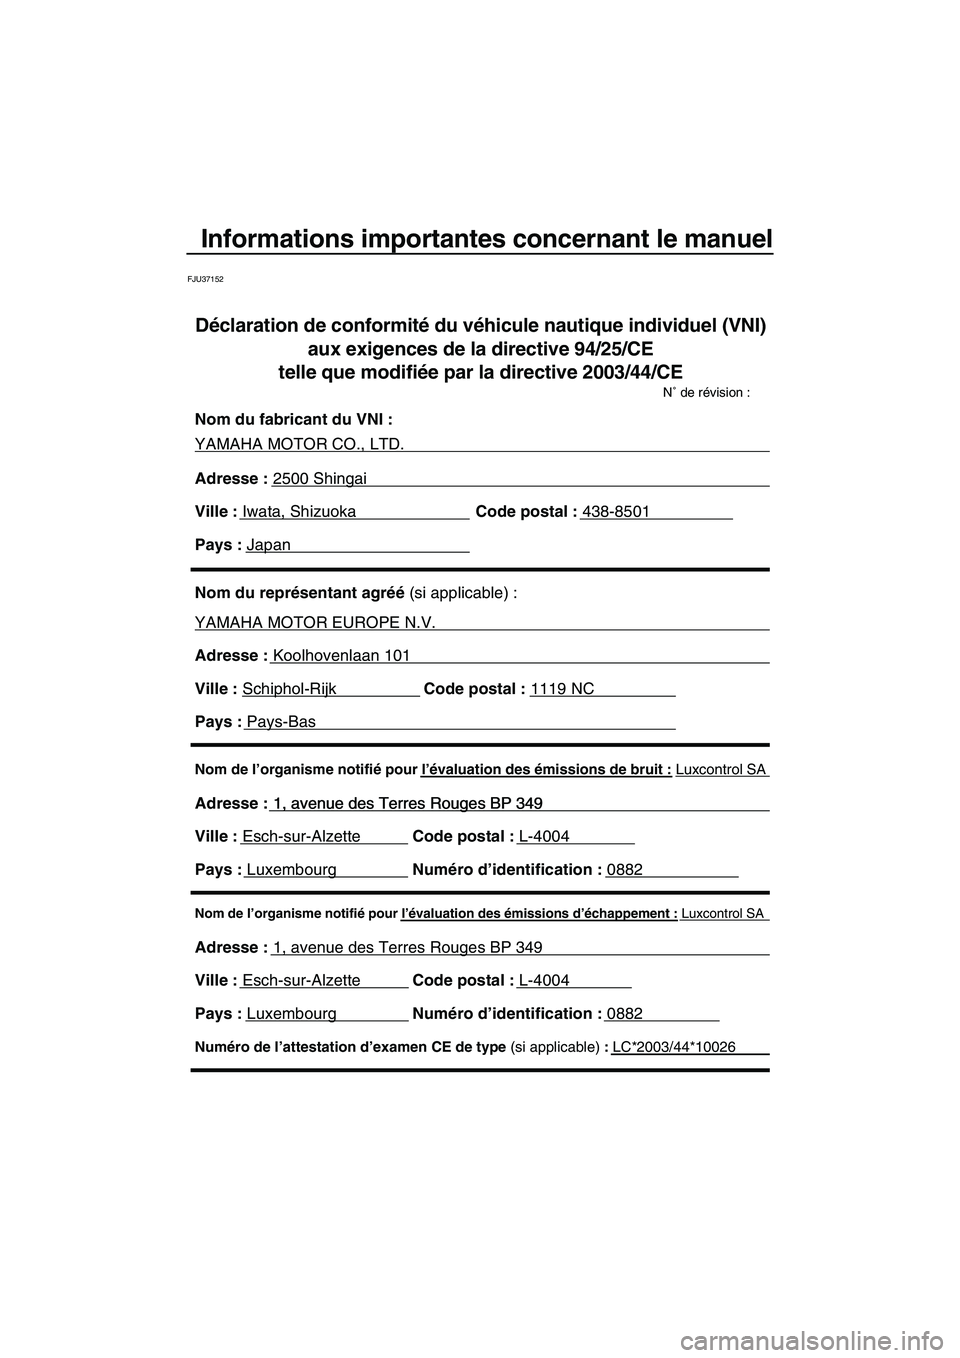 YAMAHA SVHO 2010  Notices Demploi (in French) Informations importantes concernant le manuel
FJU37152
Nom de l’organisme notifié pour l’évaluation des émissions d’échappement : Luxcontrol SA
Adresse : 1, avenue des Terres Rouges BP 349 
